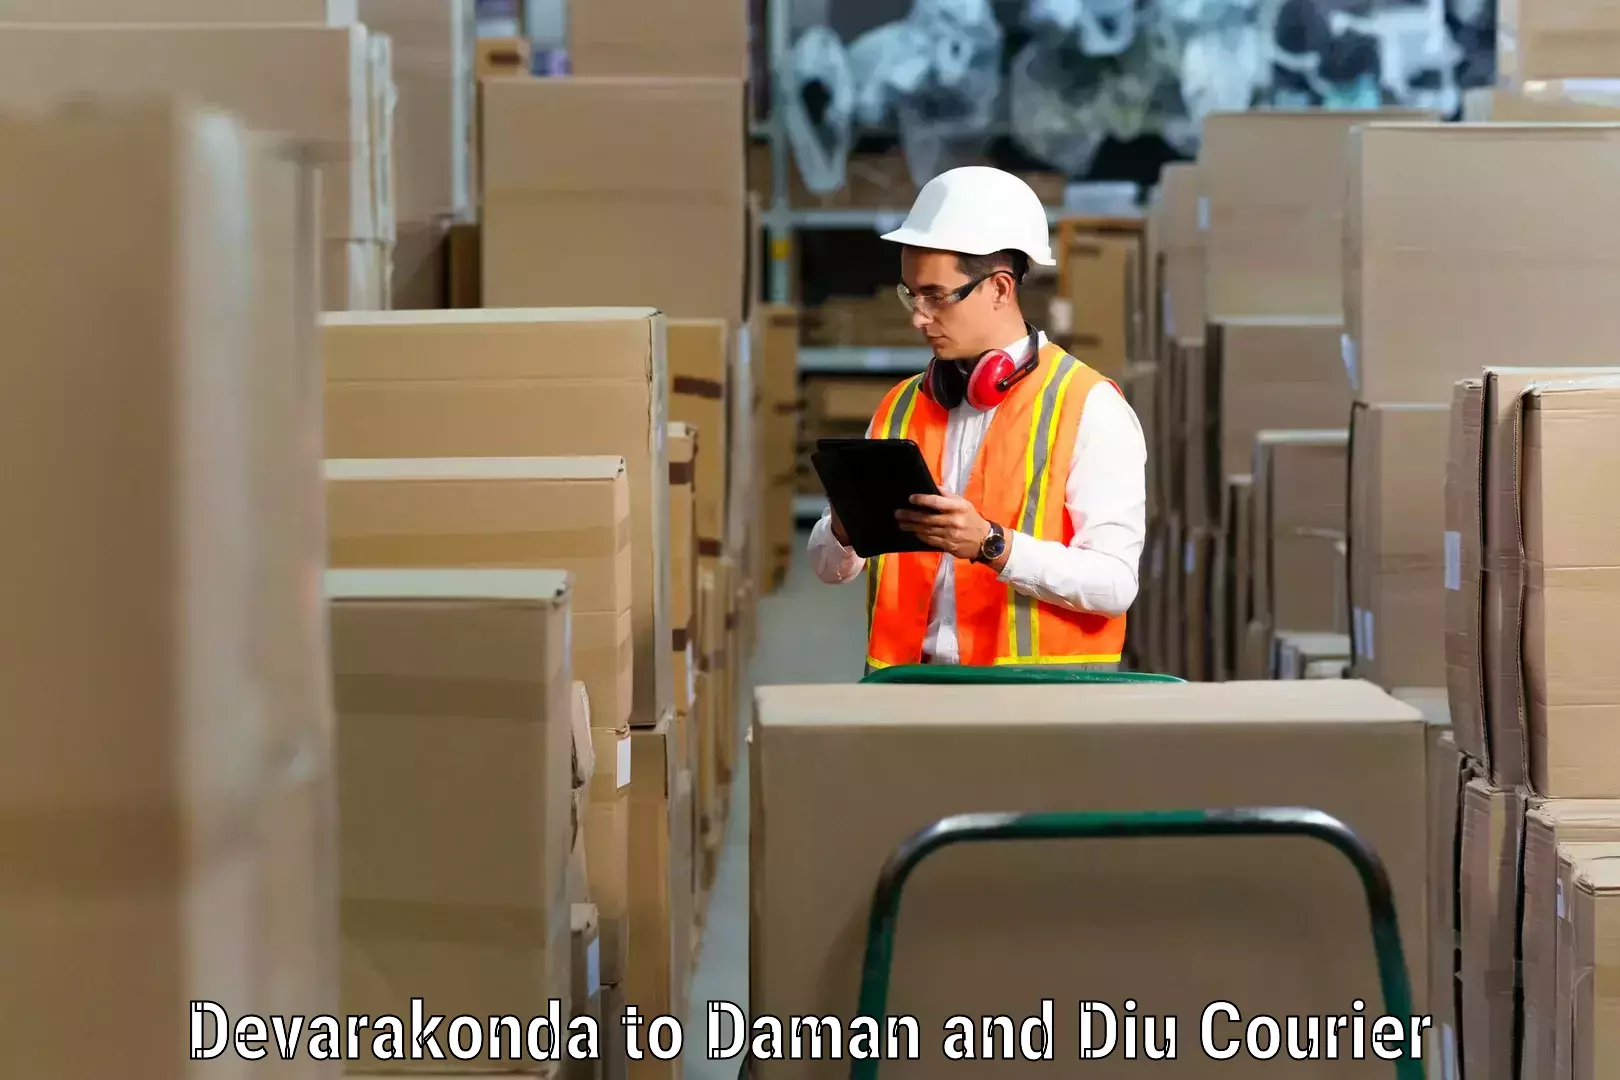 Furniture transport solutions Devarakonda to Daman and Diu